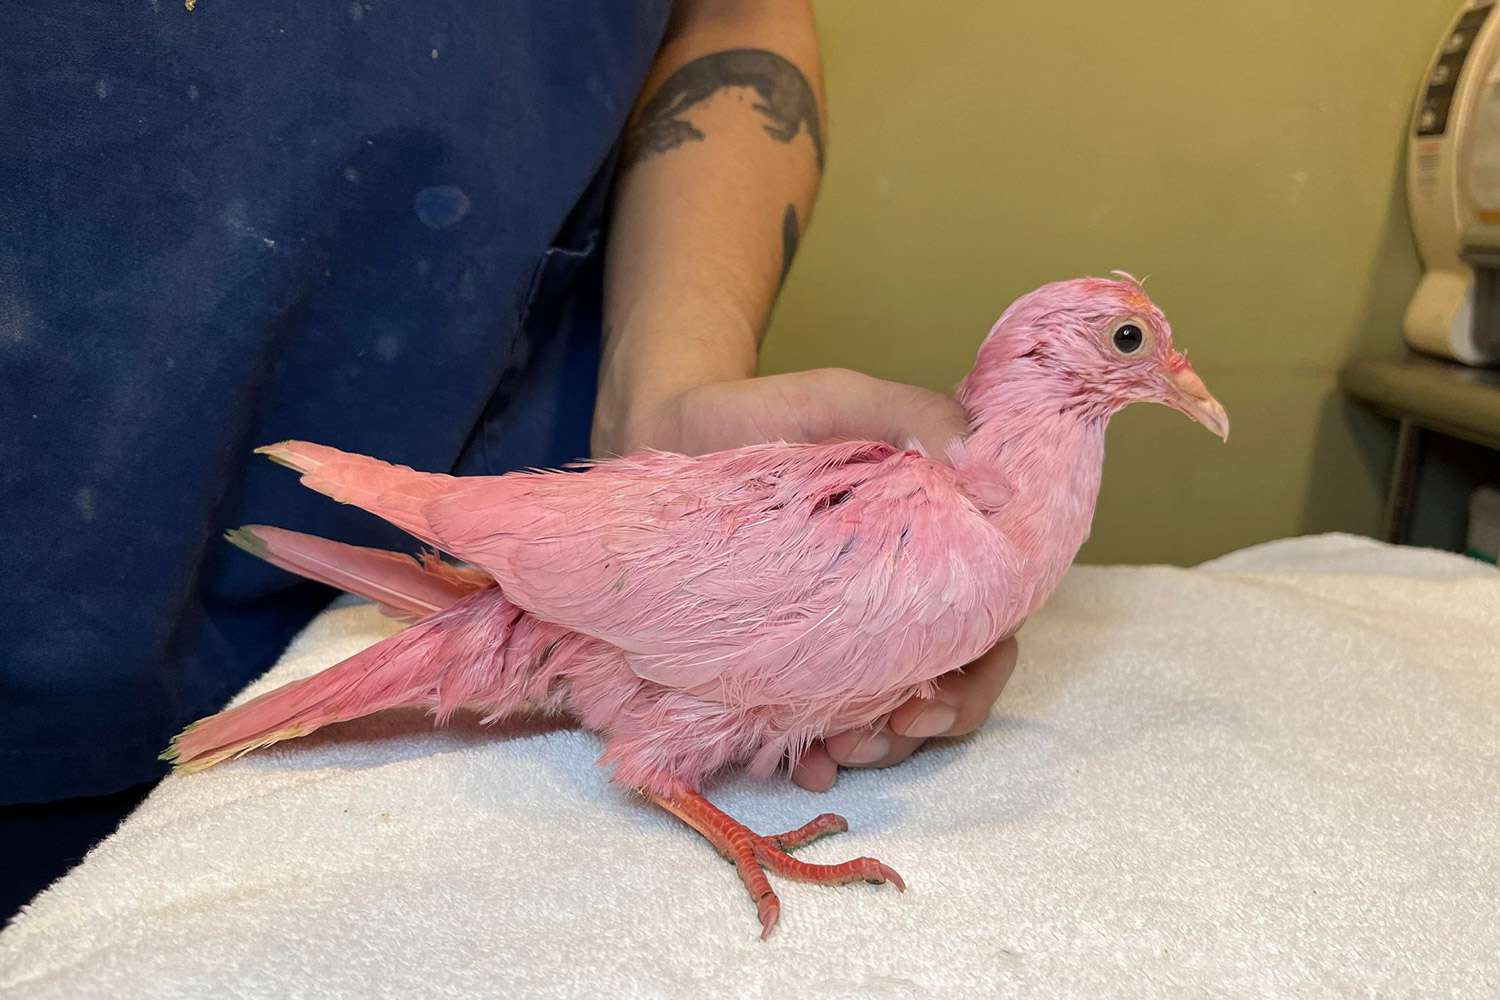 Animal Rescue เตือน 'อย่าย้อมนก' หลังพบนกพิราบสีชมพู 'ดิ้นรน' เดินเตร็ดเตร่ในนิวยอร์ค